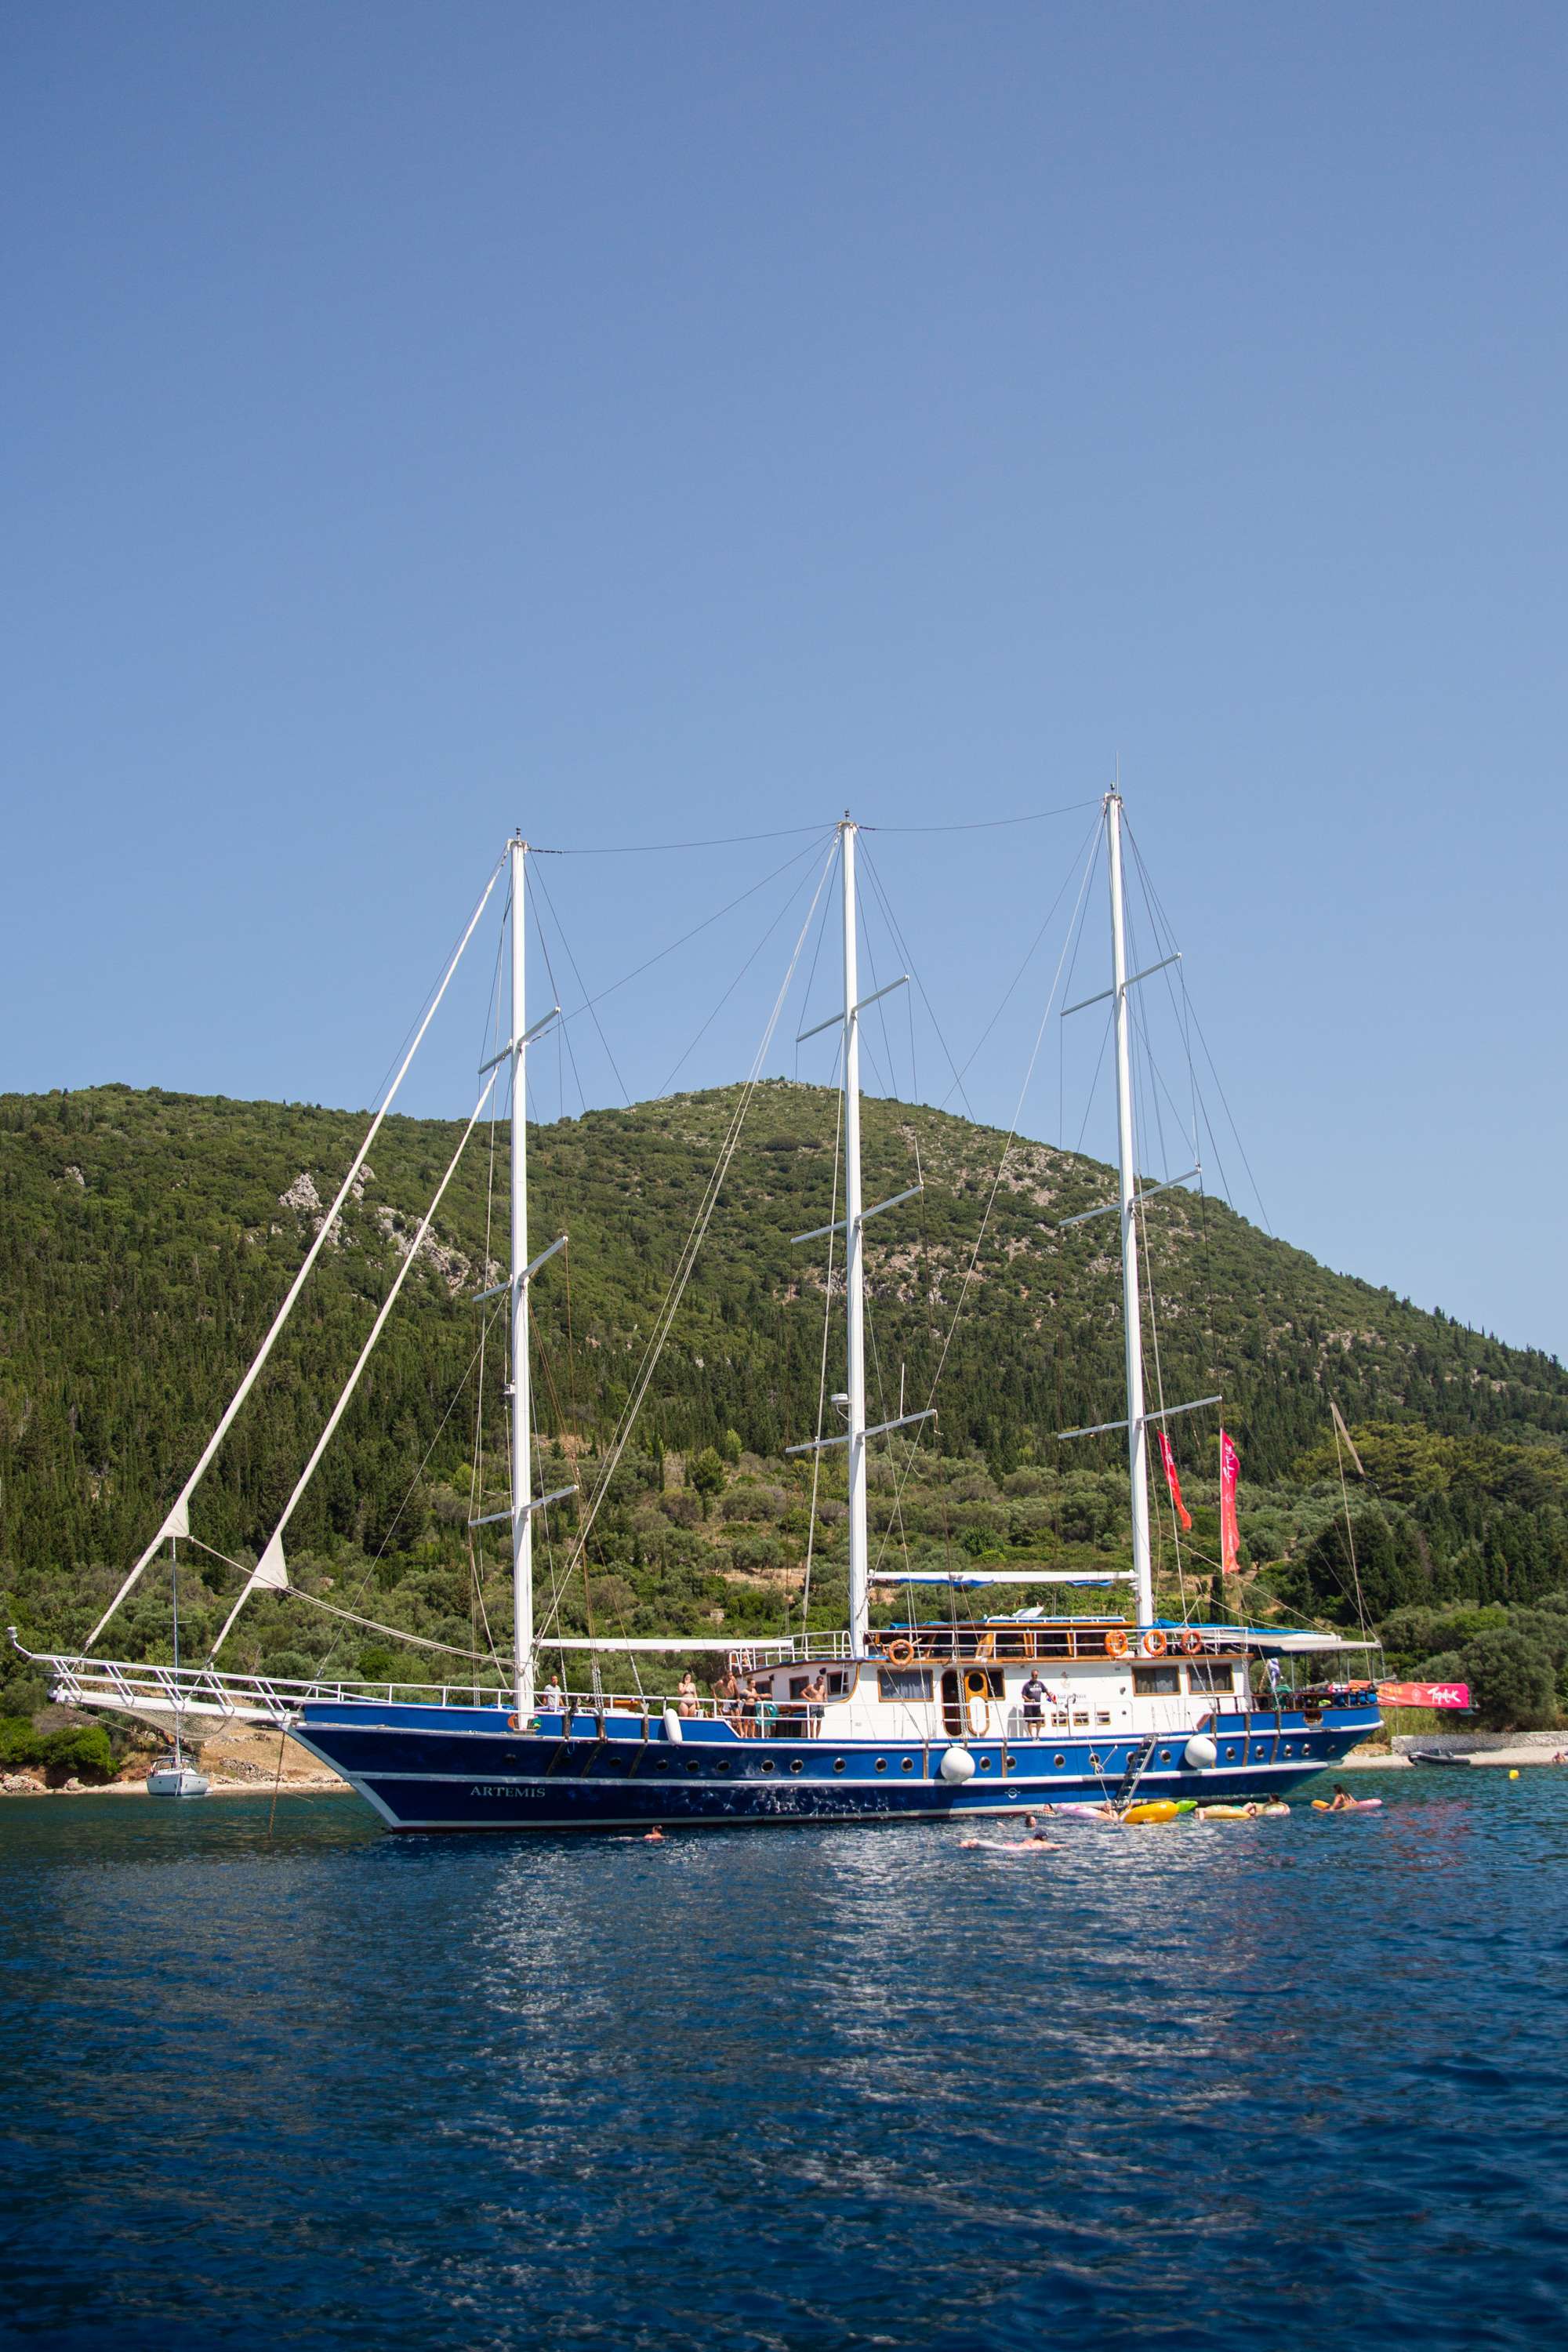 artemis - Yacht Charter Milos & Boat hire in Greece 1